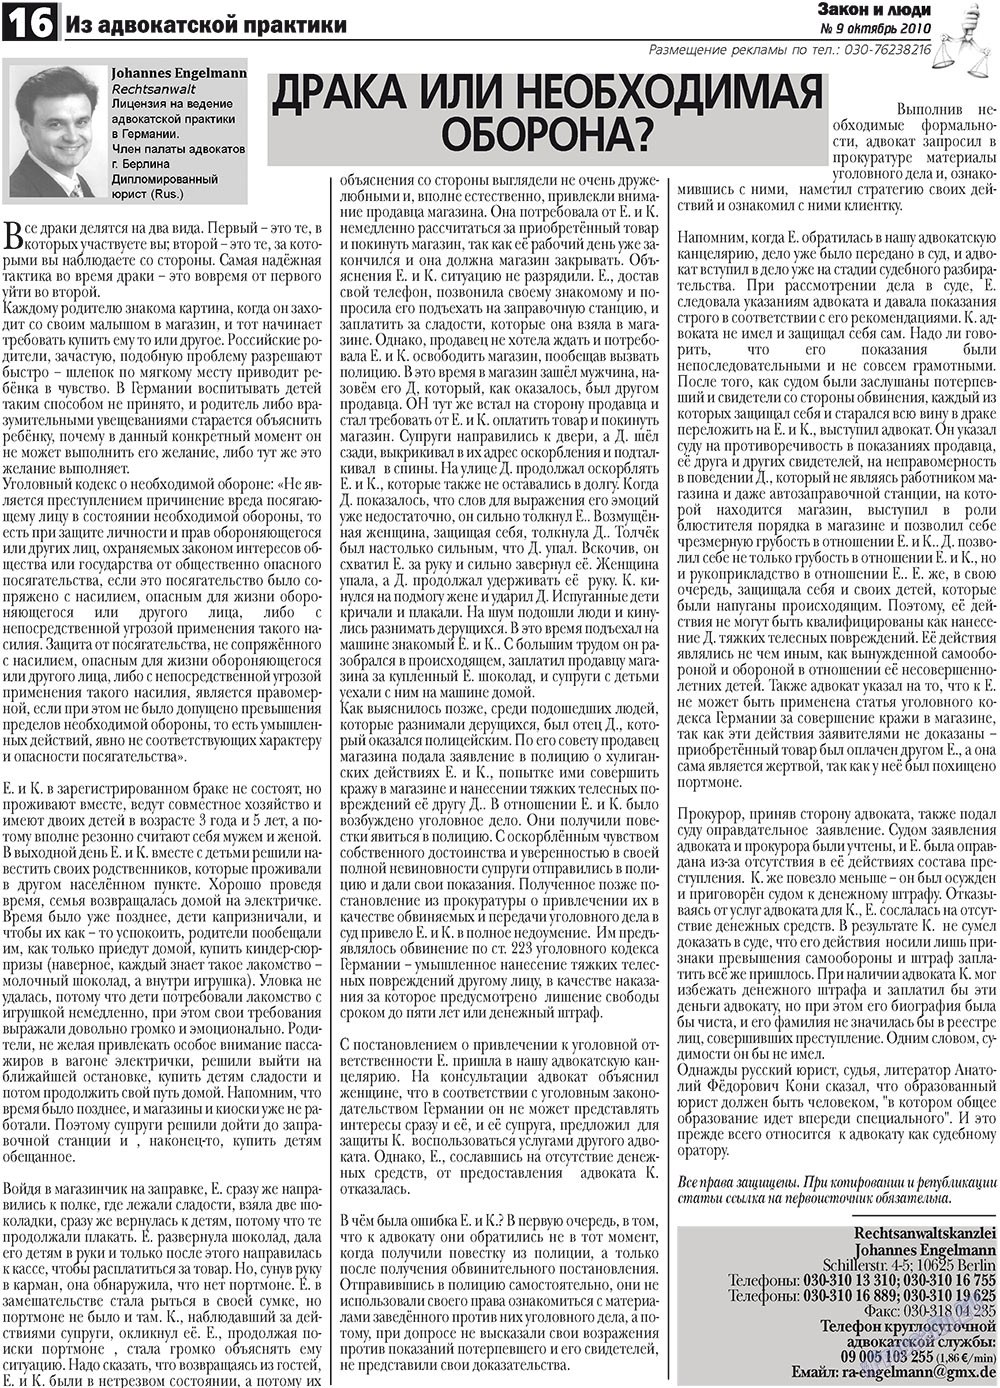 Закон и люди, газета. 2010 №9 стр.16